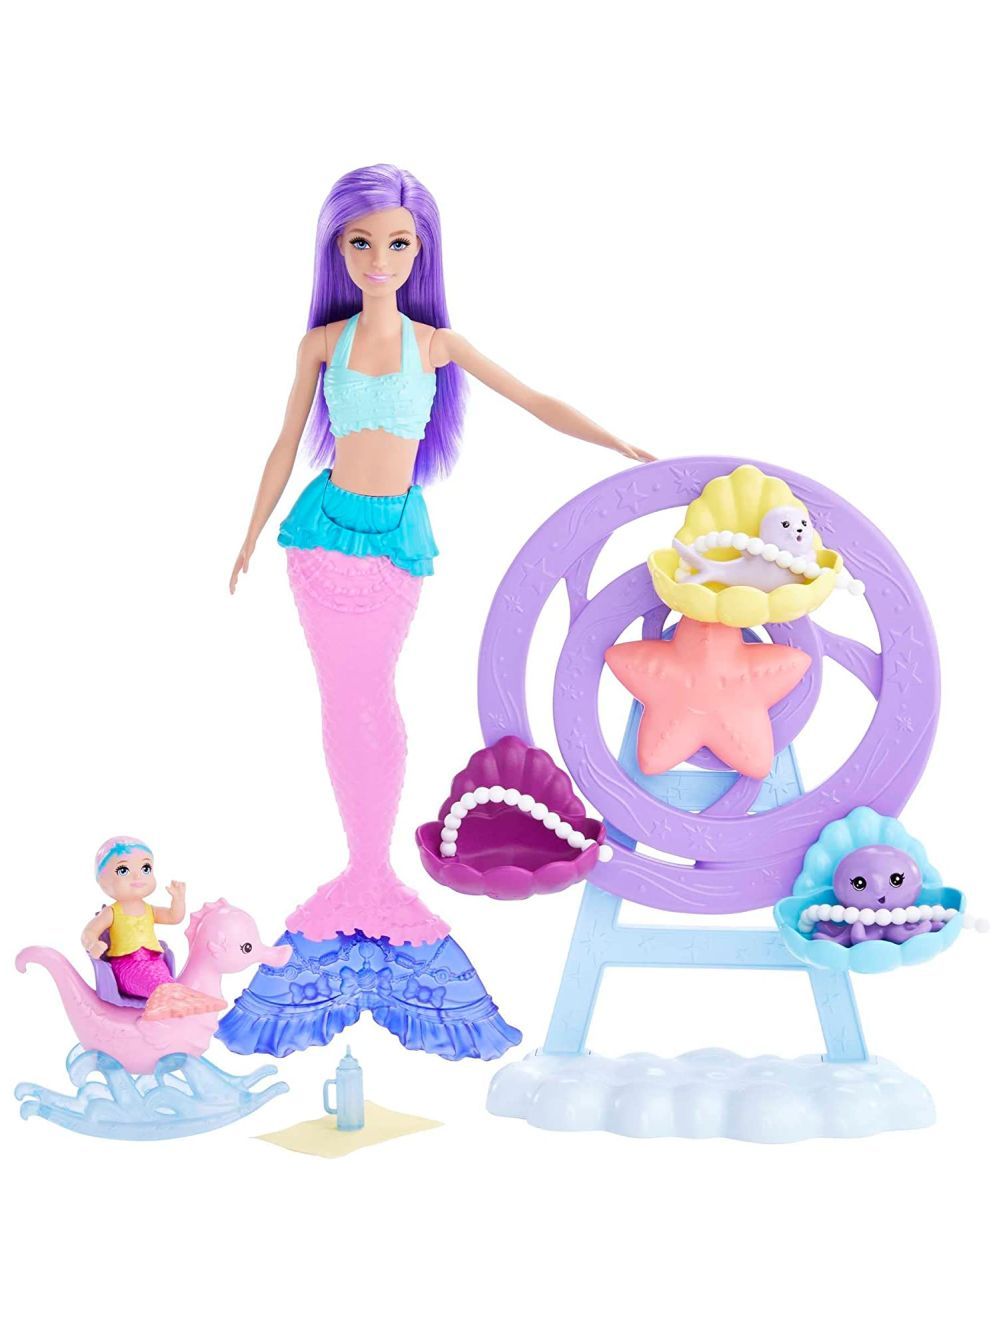 Barbie Dreamtopia Fairytale Mermaid Doll and Mermaid Baby